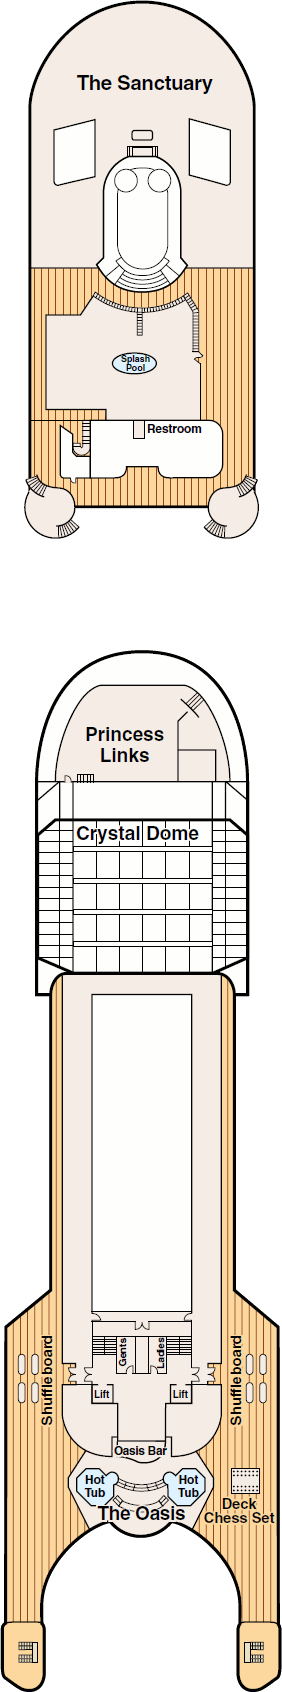 Grand Princess Sports Deck Deck Plan